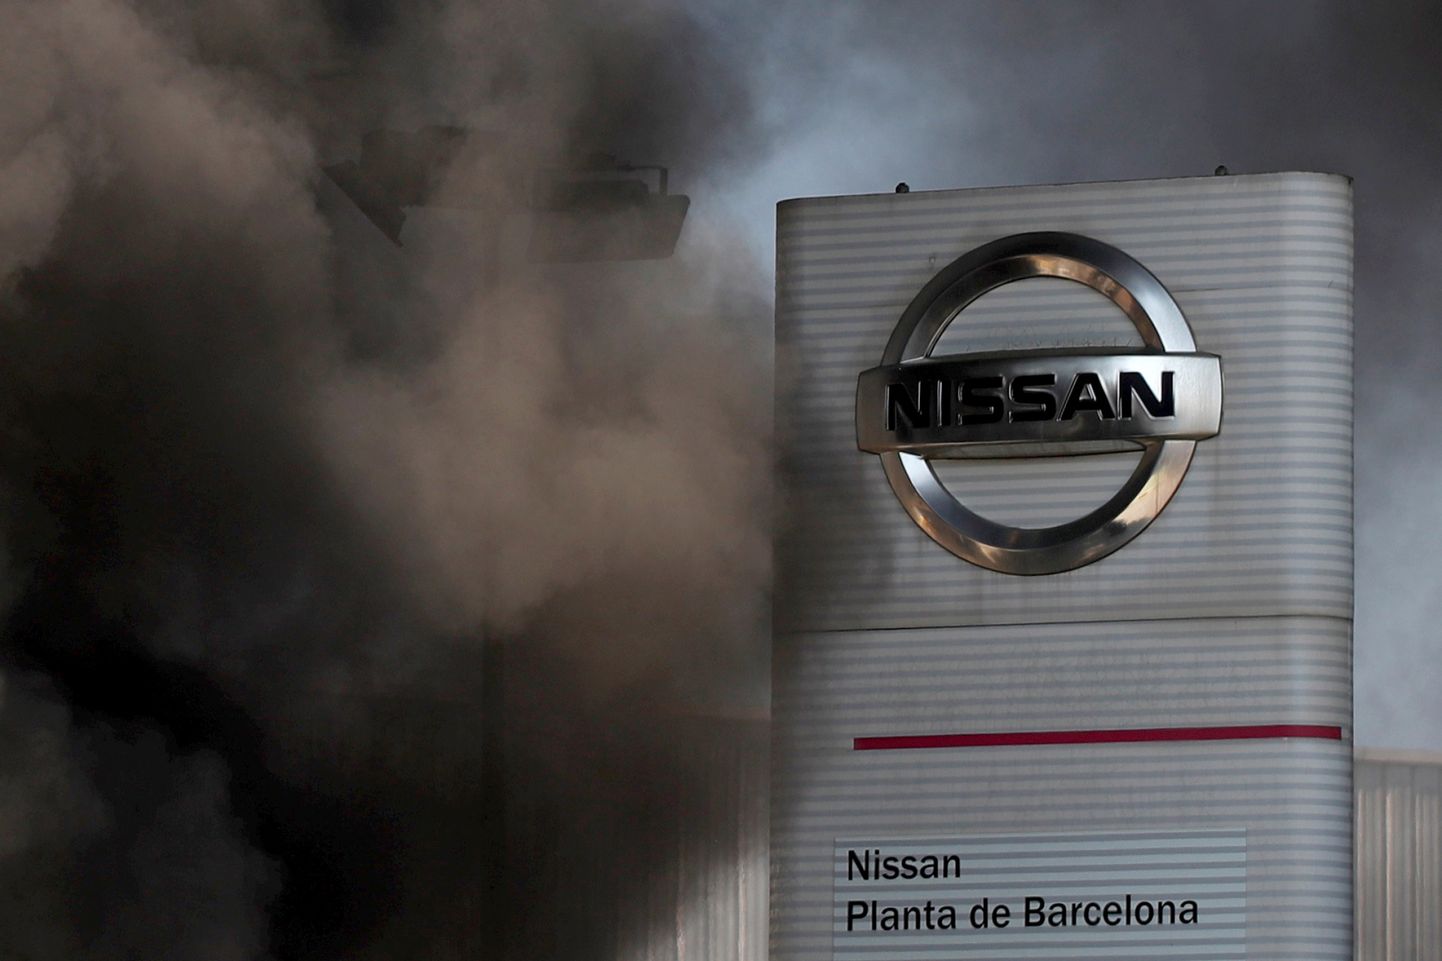 Spāņi protestē pret Nissan rūpnīcas slēgšanu Barselonā